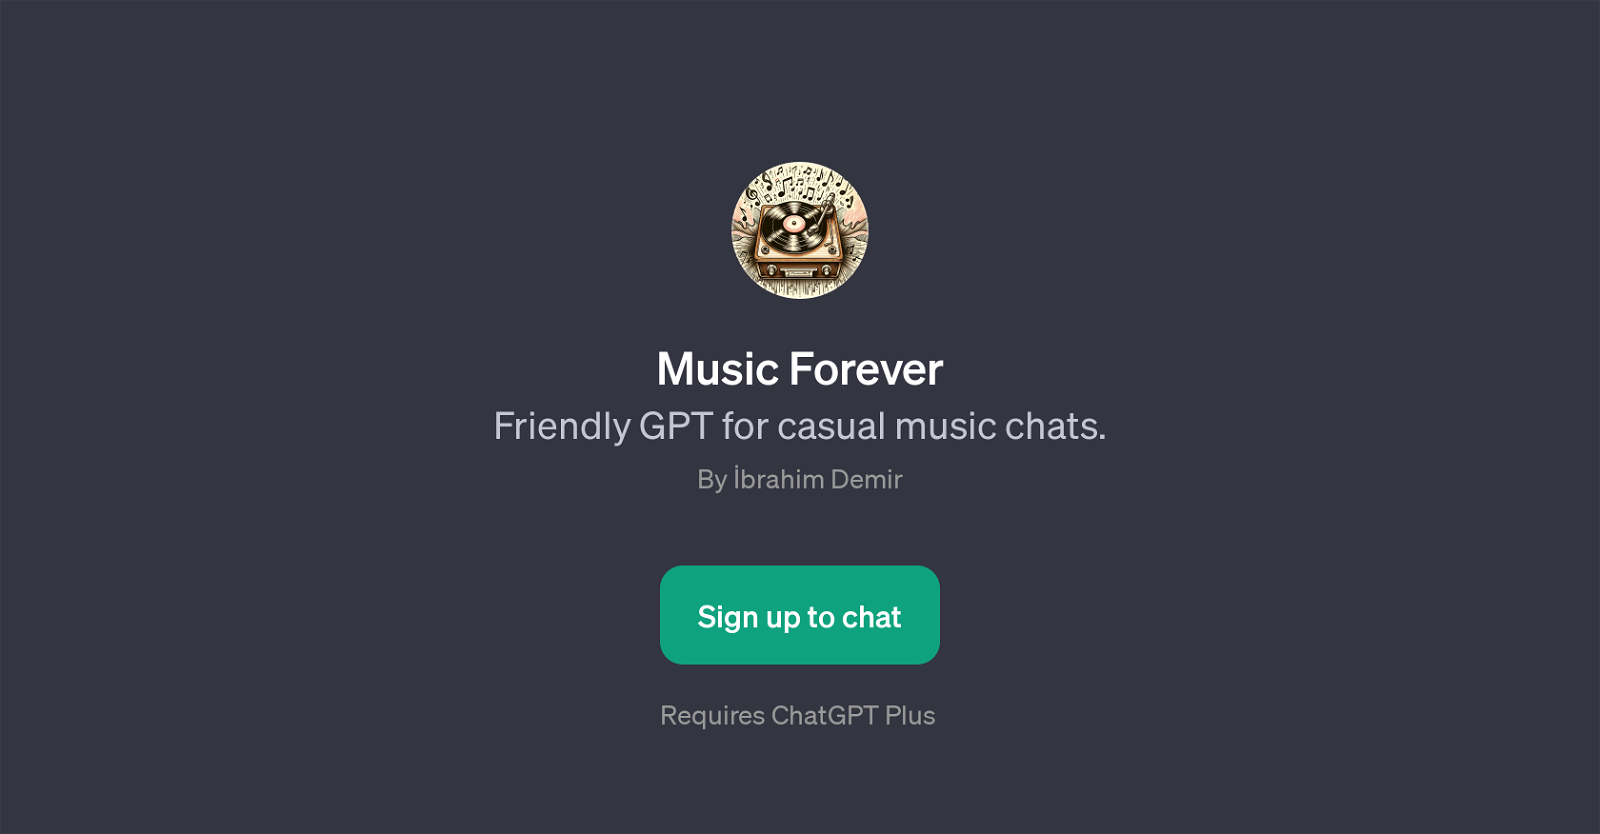 Music Forever website